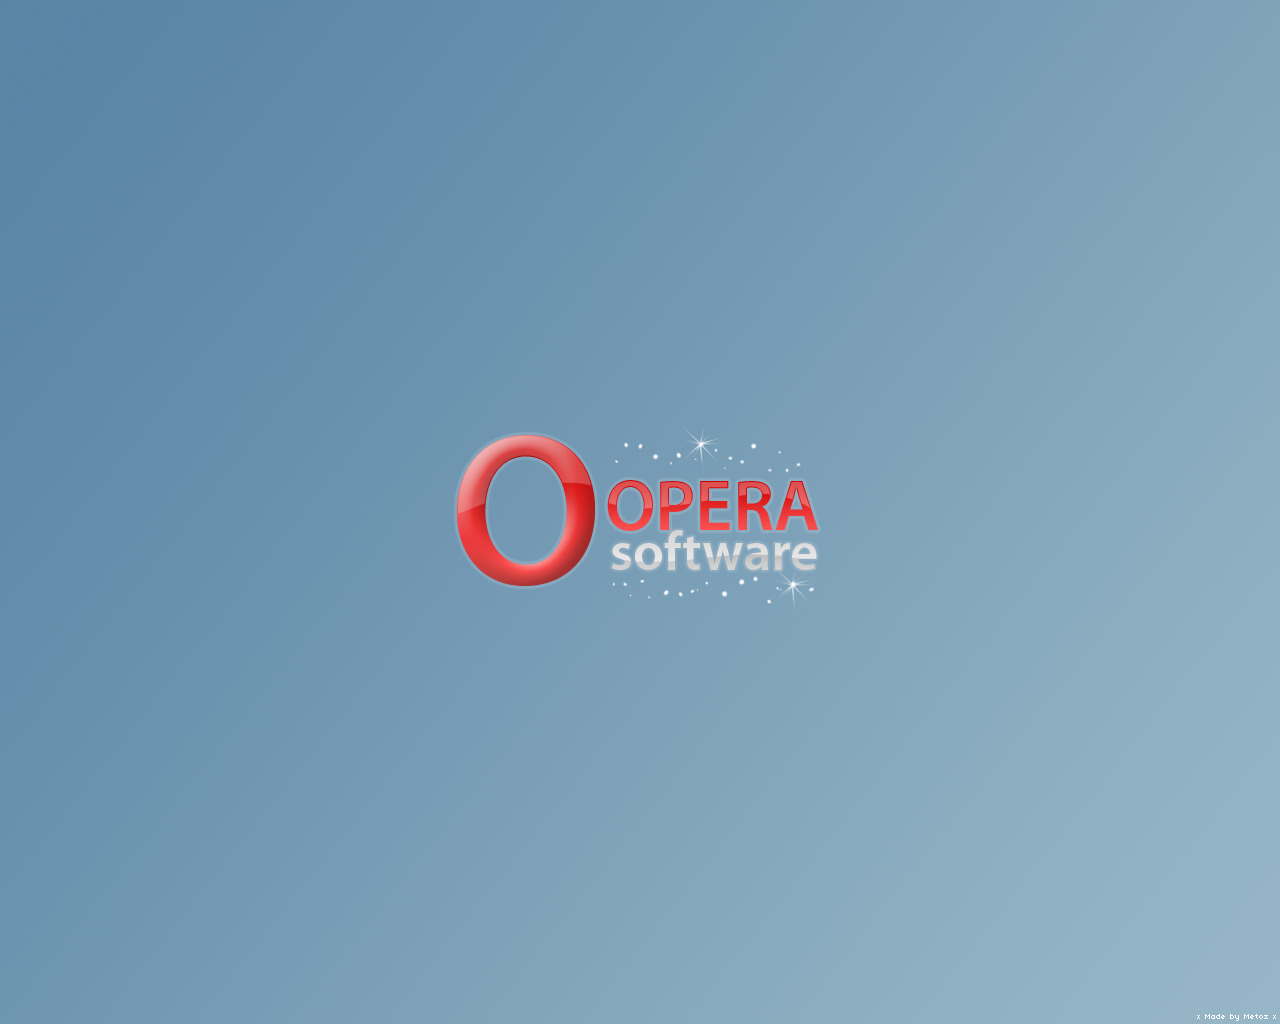 Opera Kyleabaker